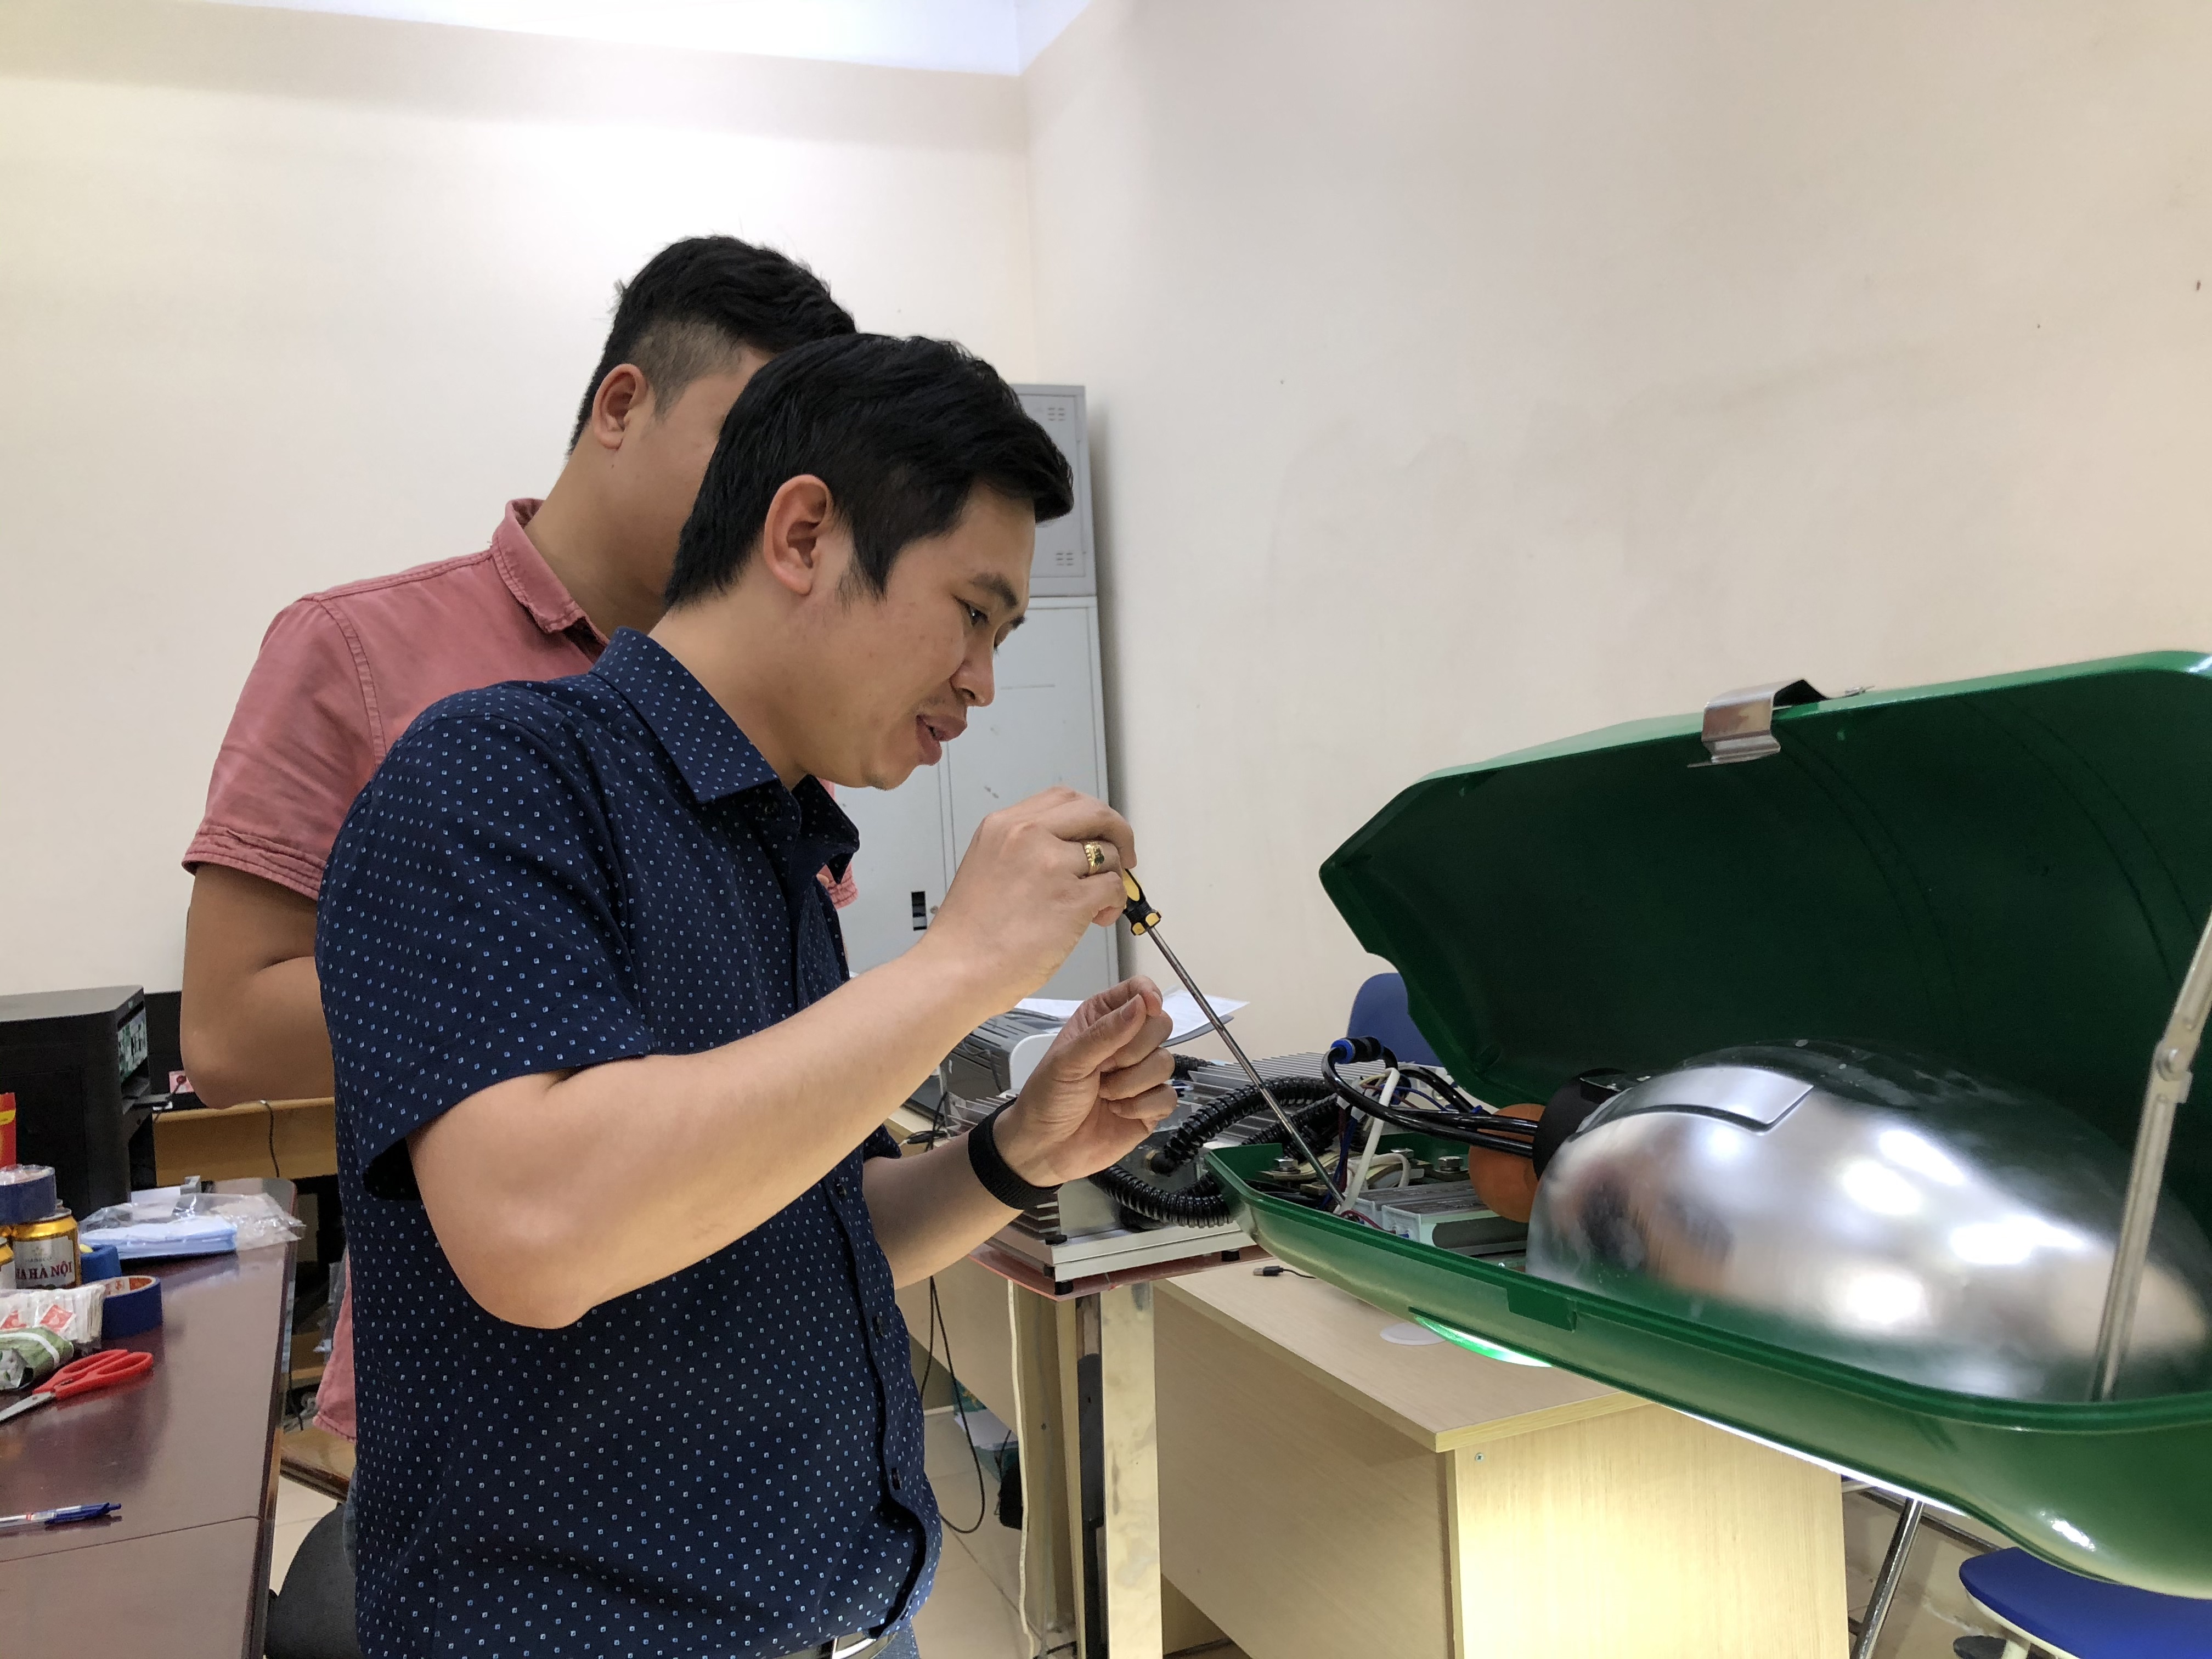 TS. Bùi Hùng Thắng (Viện Khoa học Vật liệu, Viện Hàn lâm KH&CN Việt Nam) và cộng sự đang thao tác trên bộ module đèn LED.